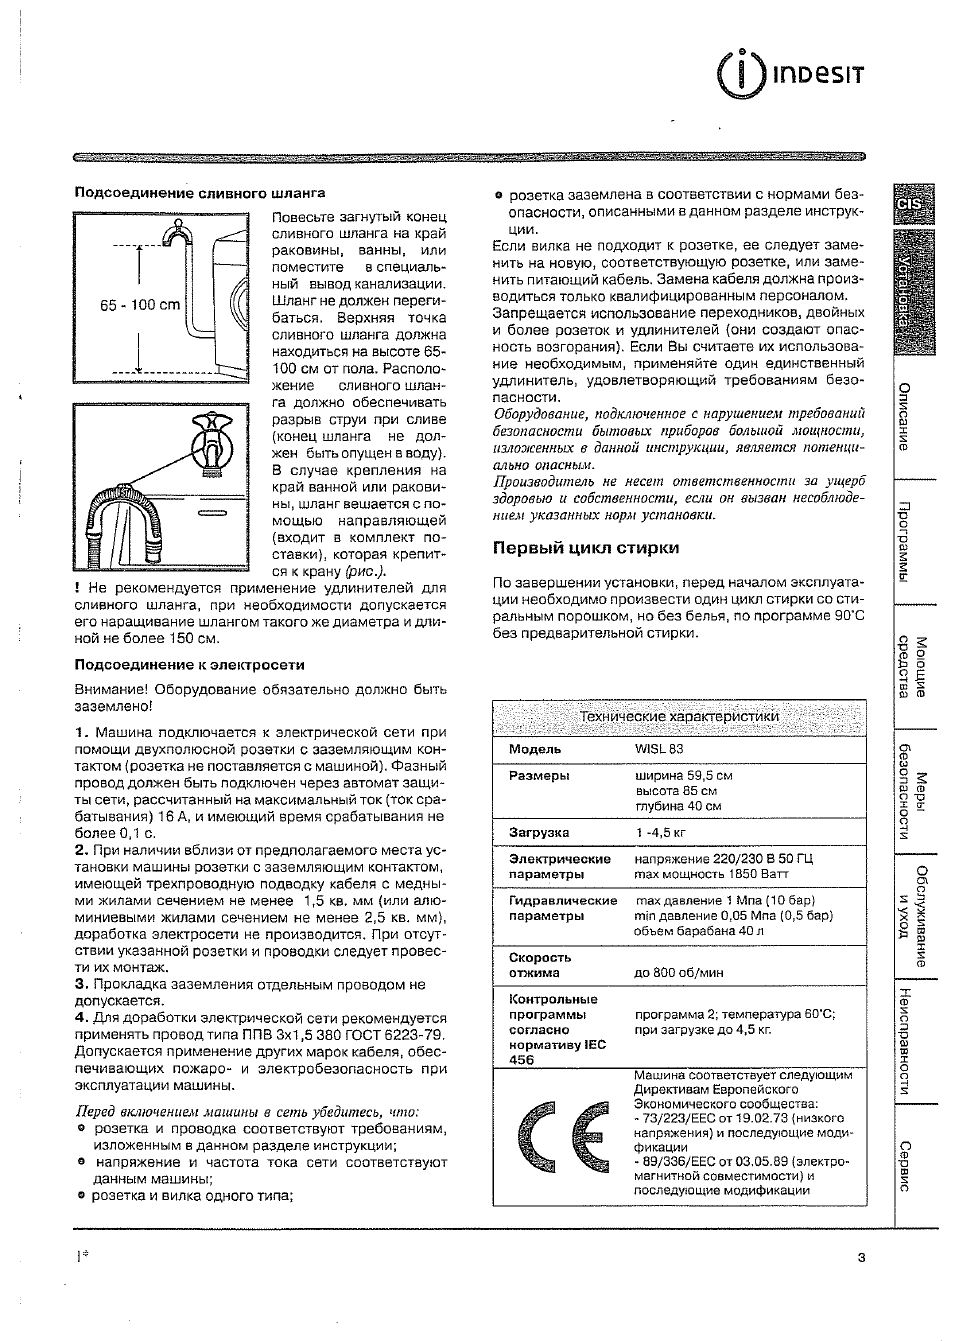 "индезит" wisl 105: инструкция по эксплуатации, обзор и описание